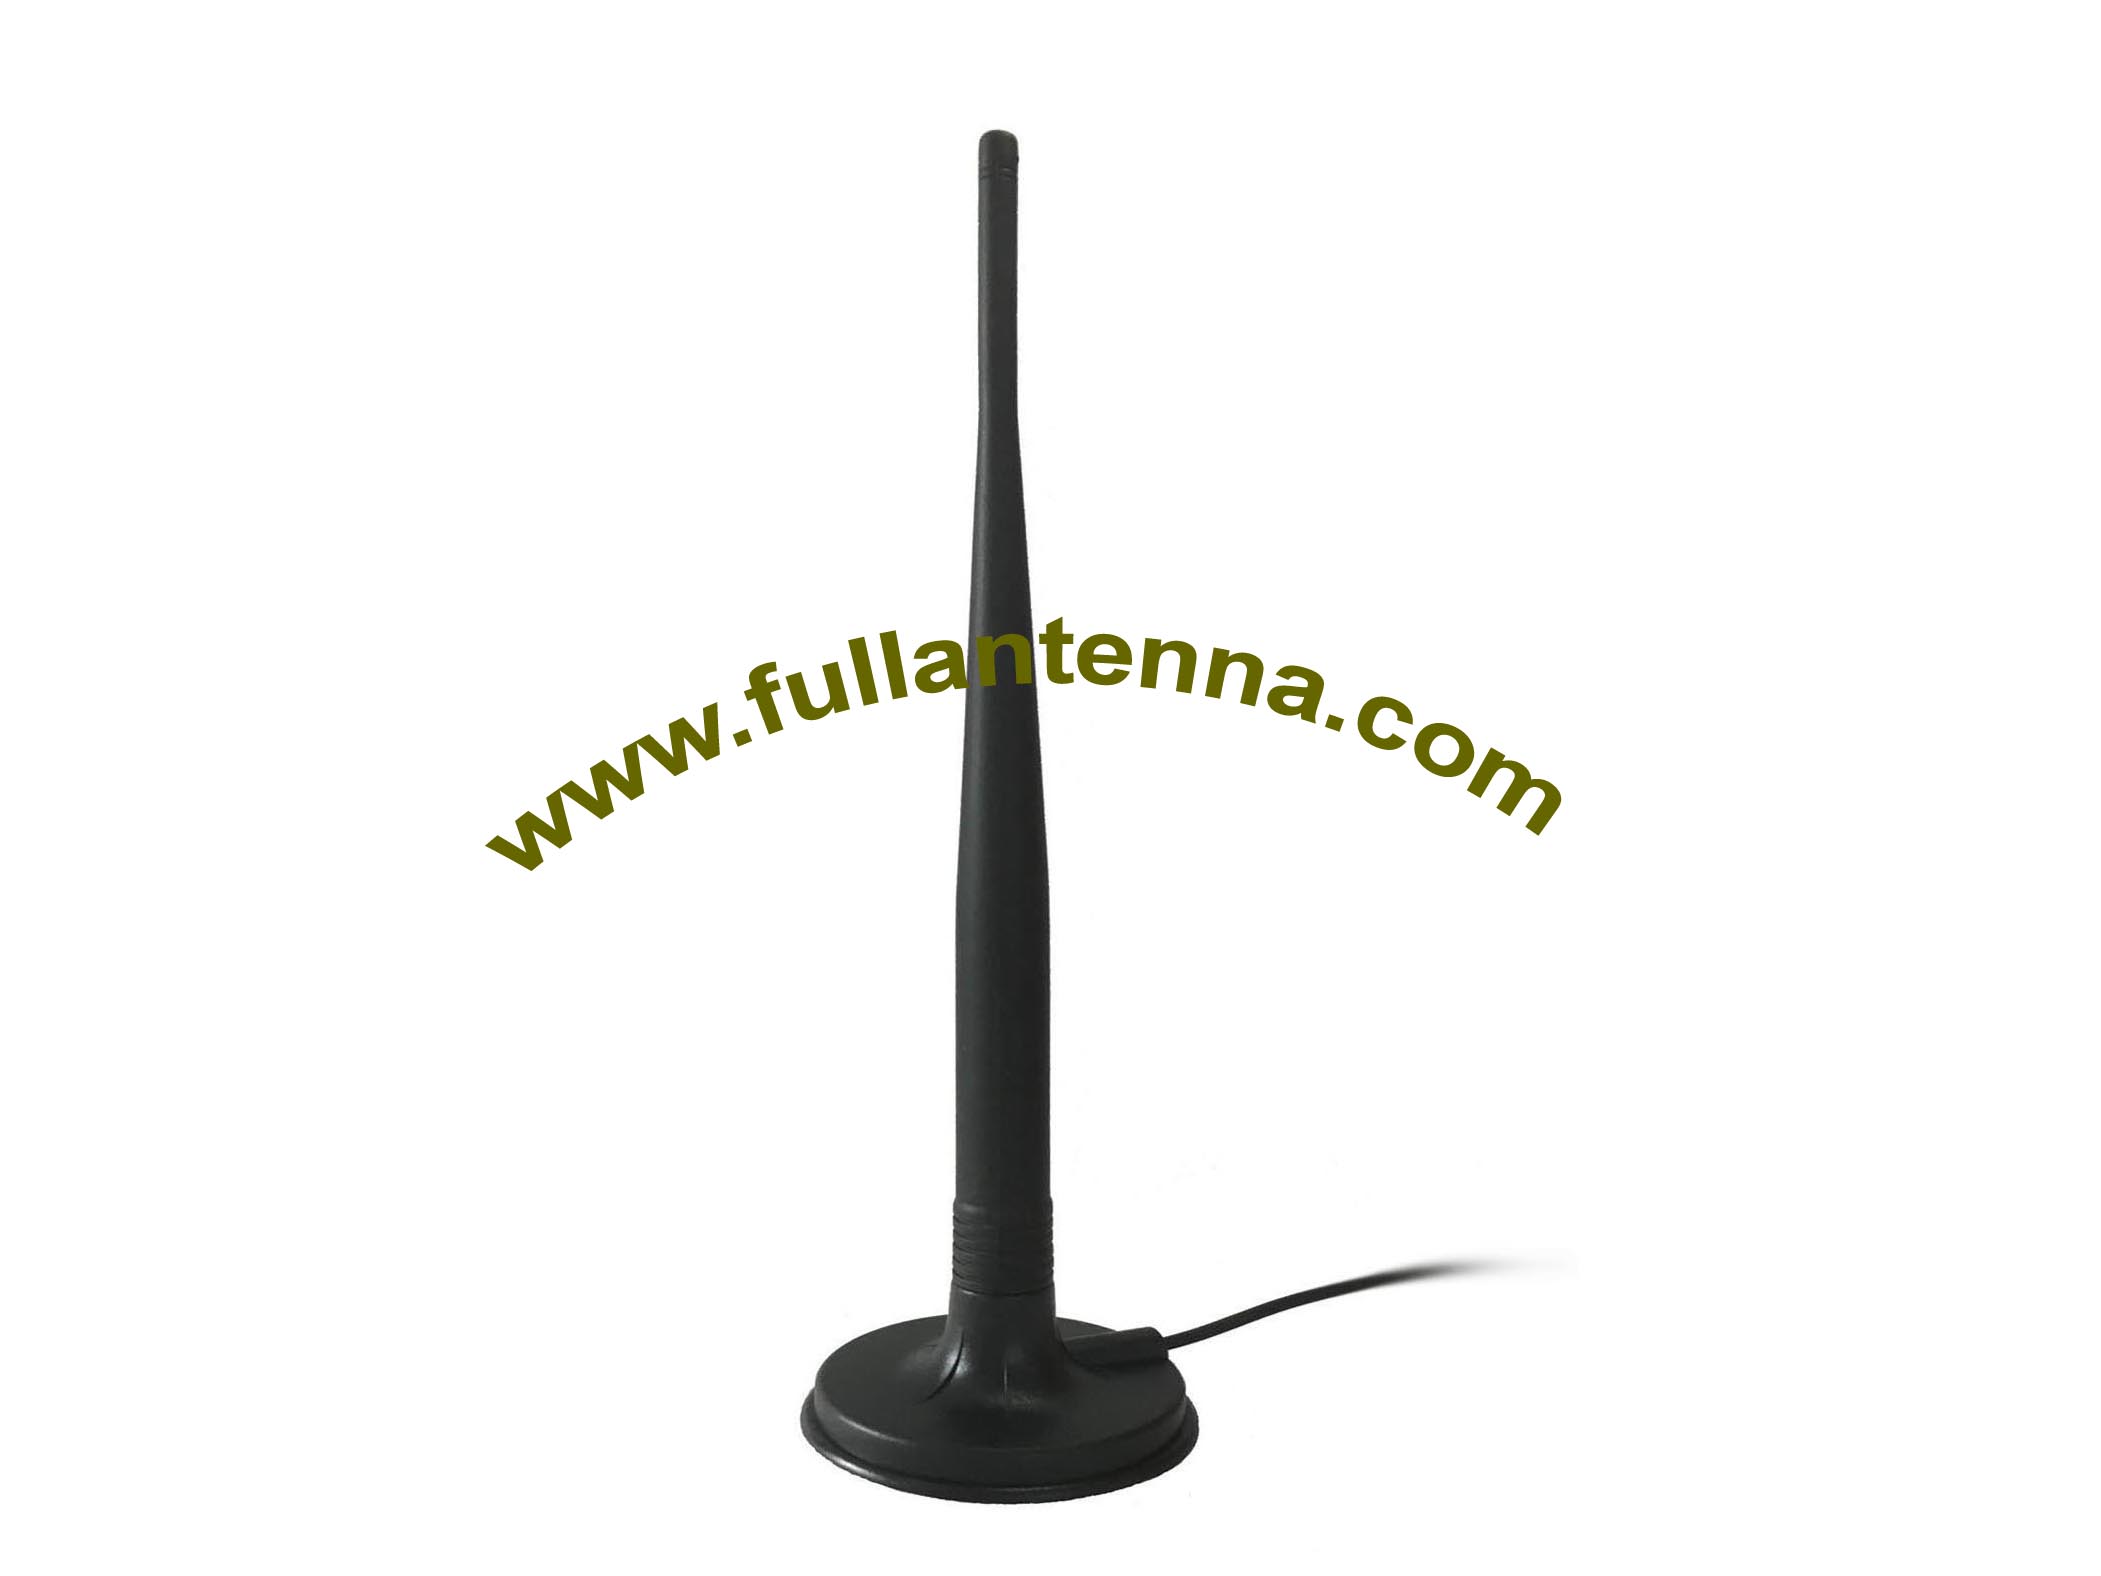 P / N: Antena zewnętrzna FALTE.31,4G / LTE, duża antena magnetyczna 5dBi